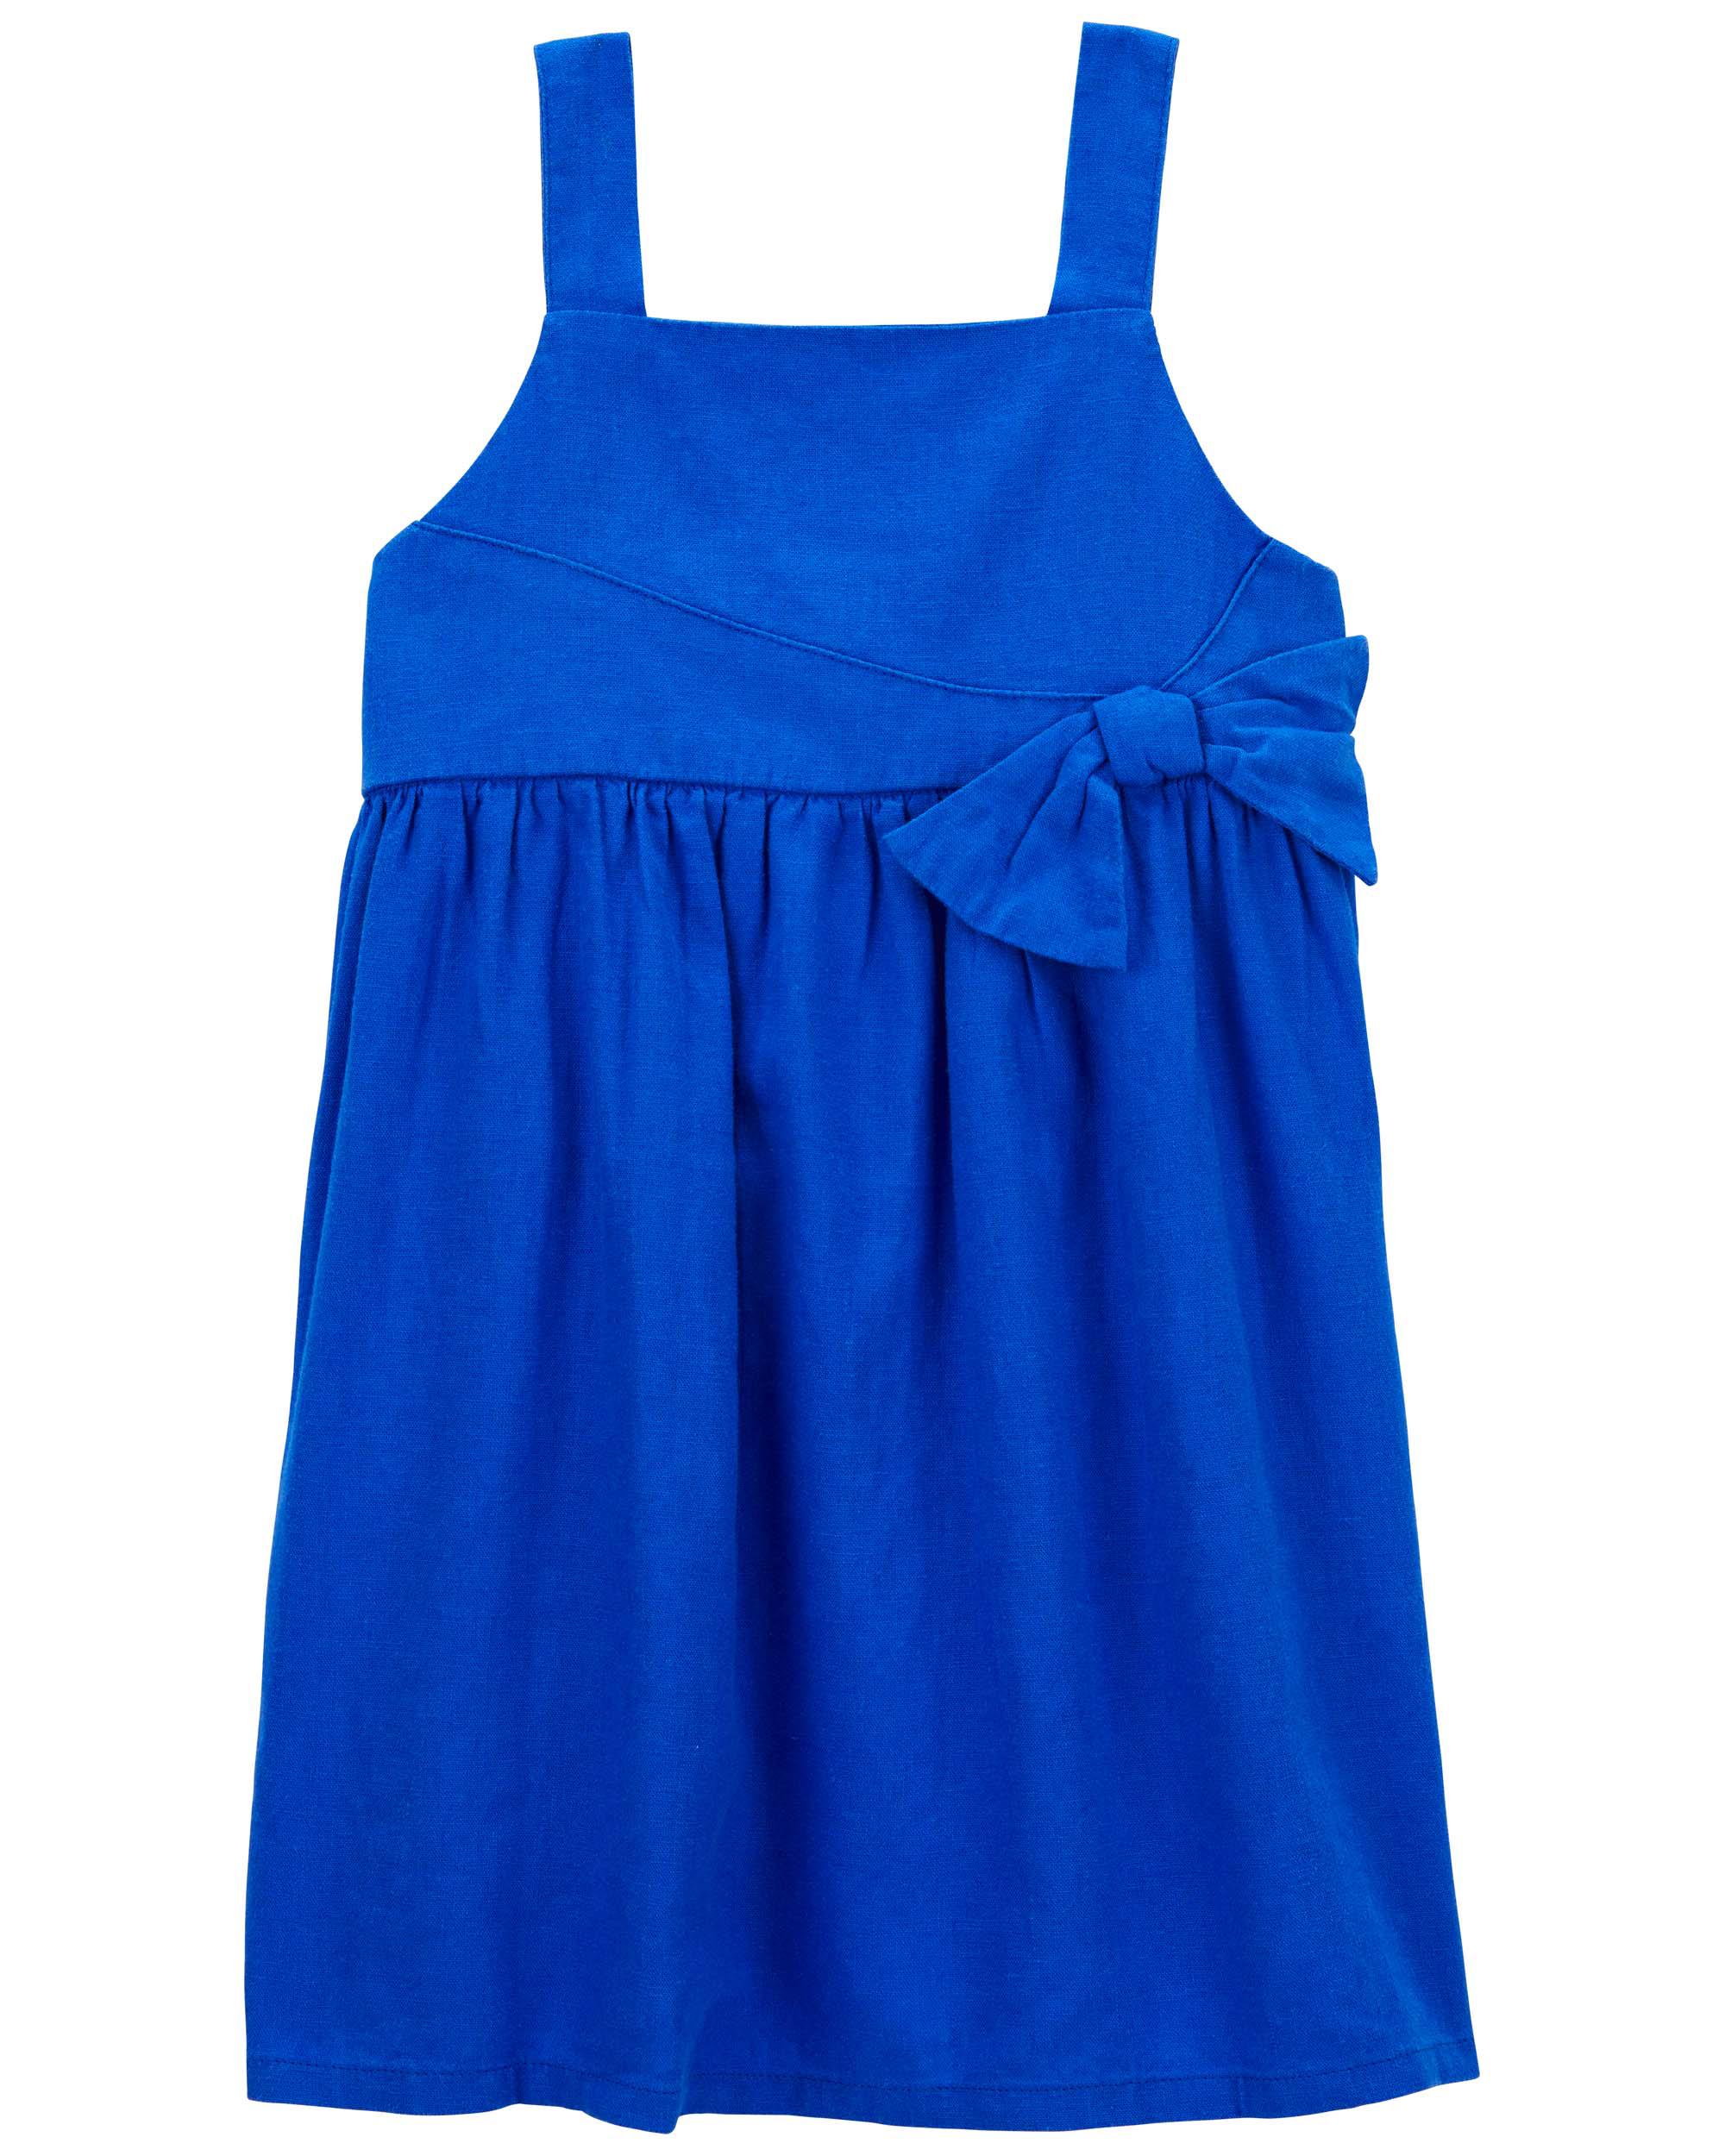 Toddler Sleeveless Dress